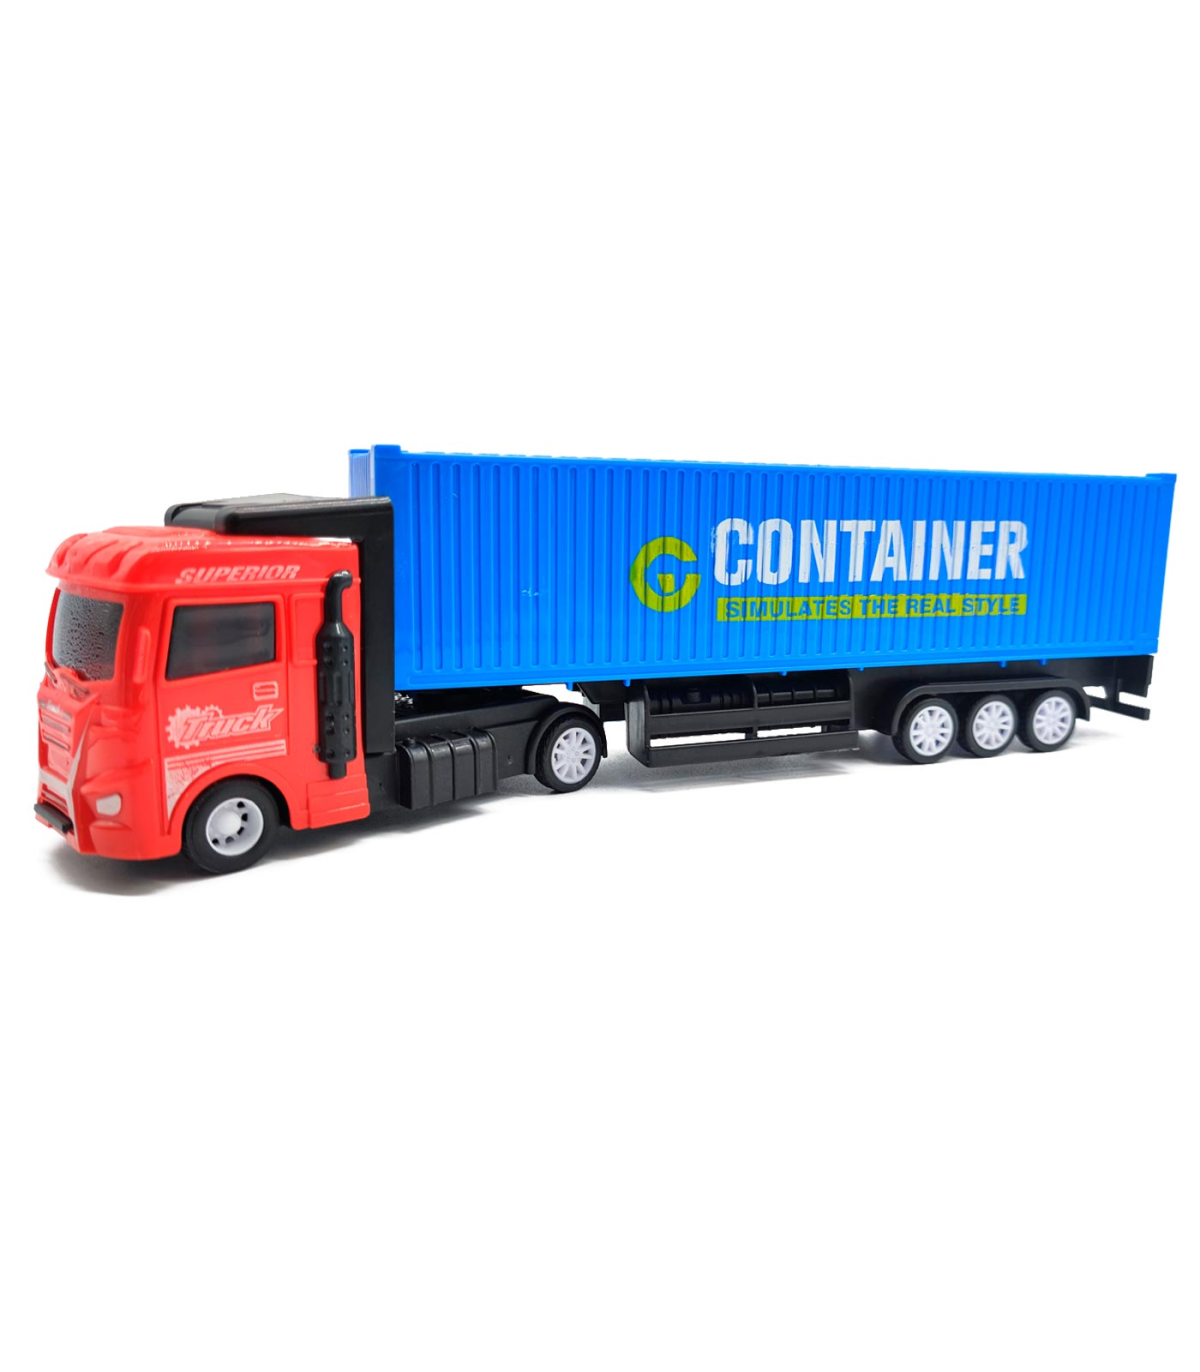 chocar Retocar parilla Tradineur - Camión container de fricción - Fabricado en plástico resistente  - Juego de vehículos de Juguete para niños pequeños